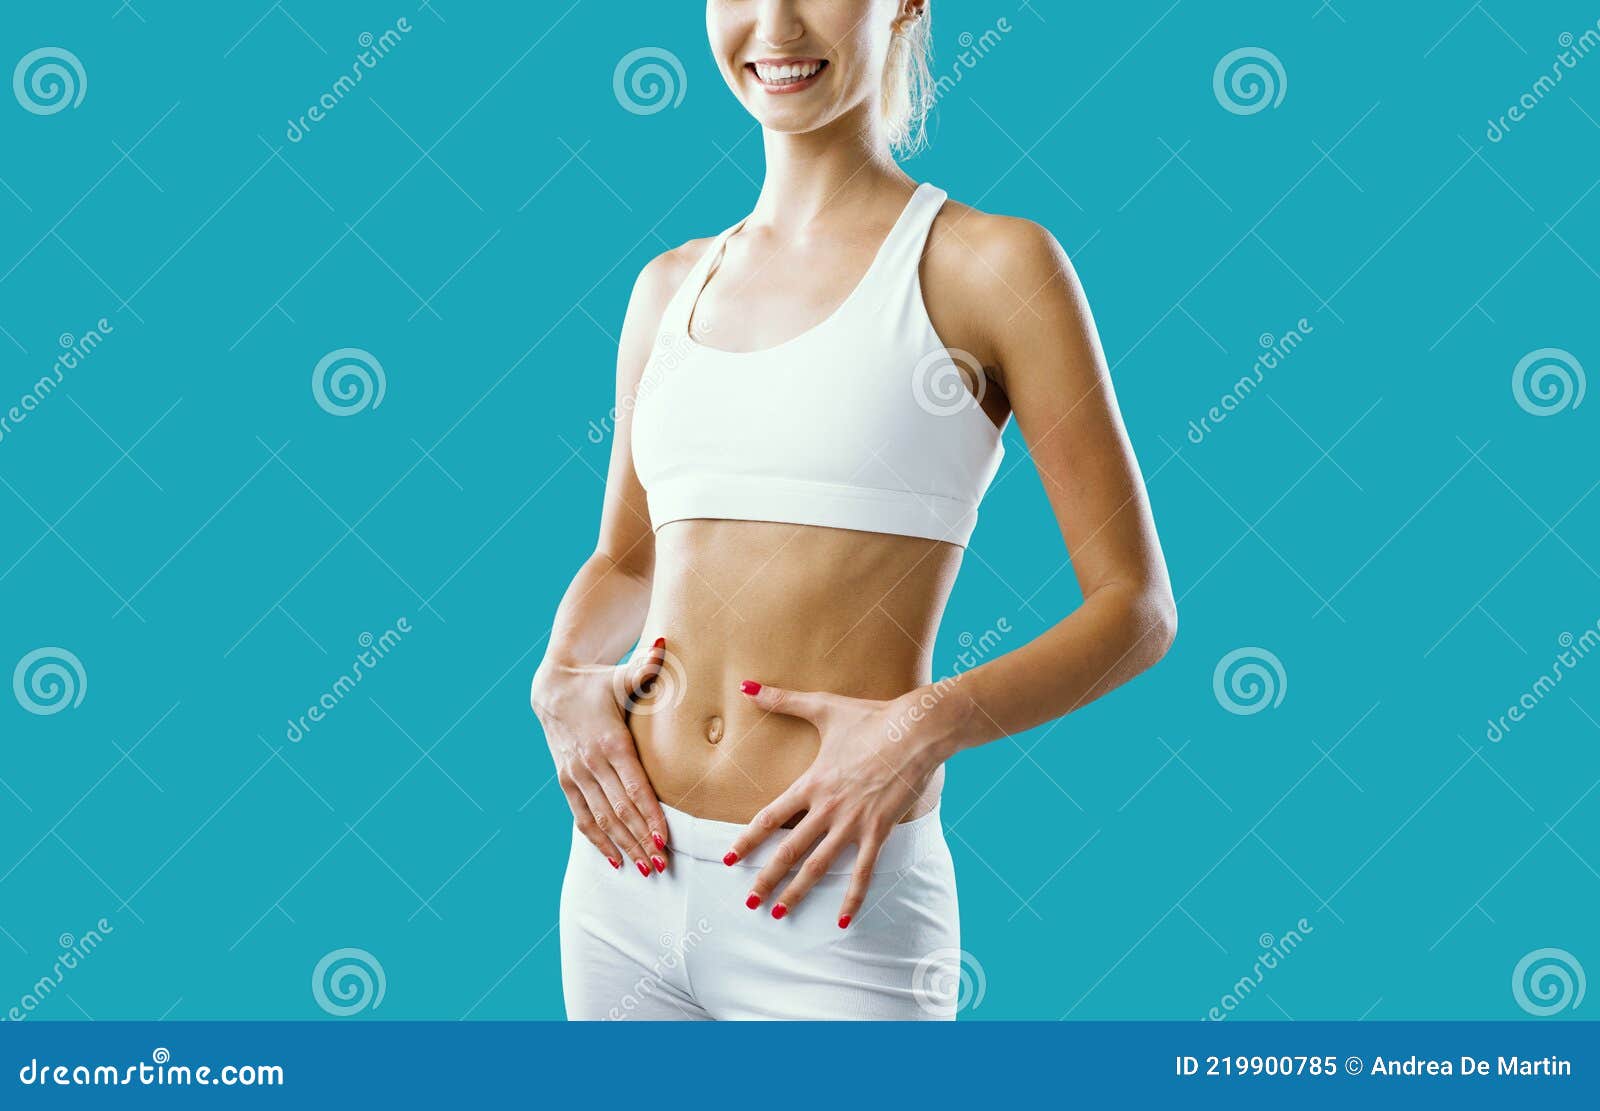 摸肚子女人素材-摸肚子女人图片-摸肚子女人素材图片下载-觅知网